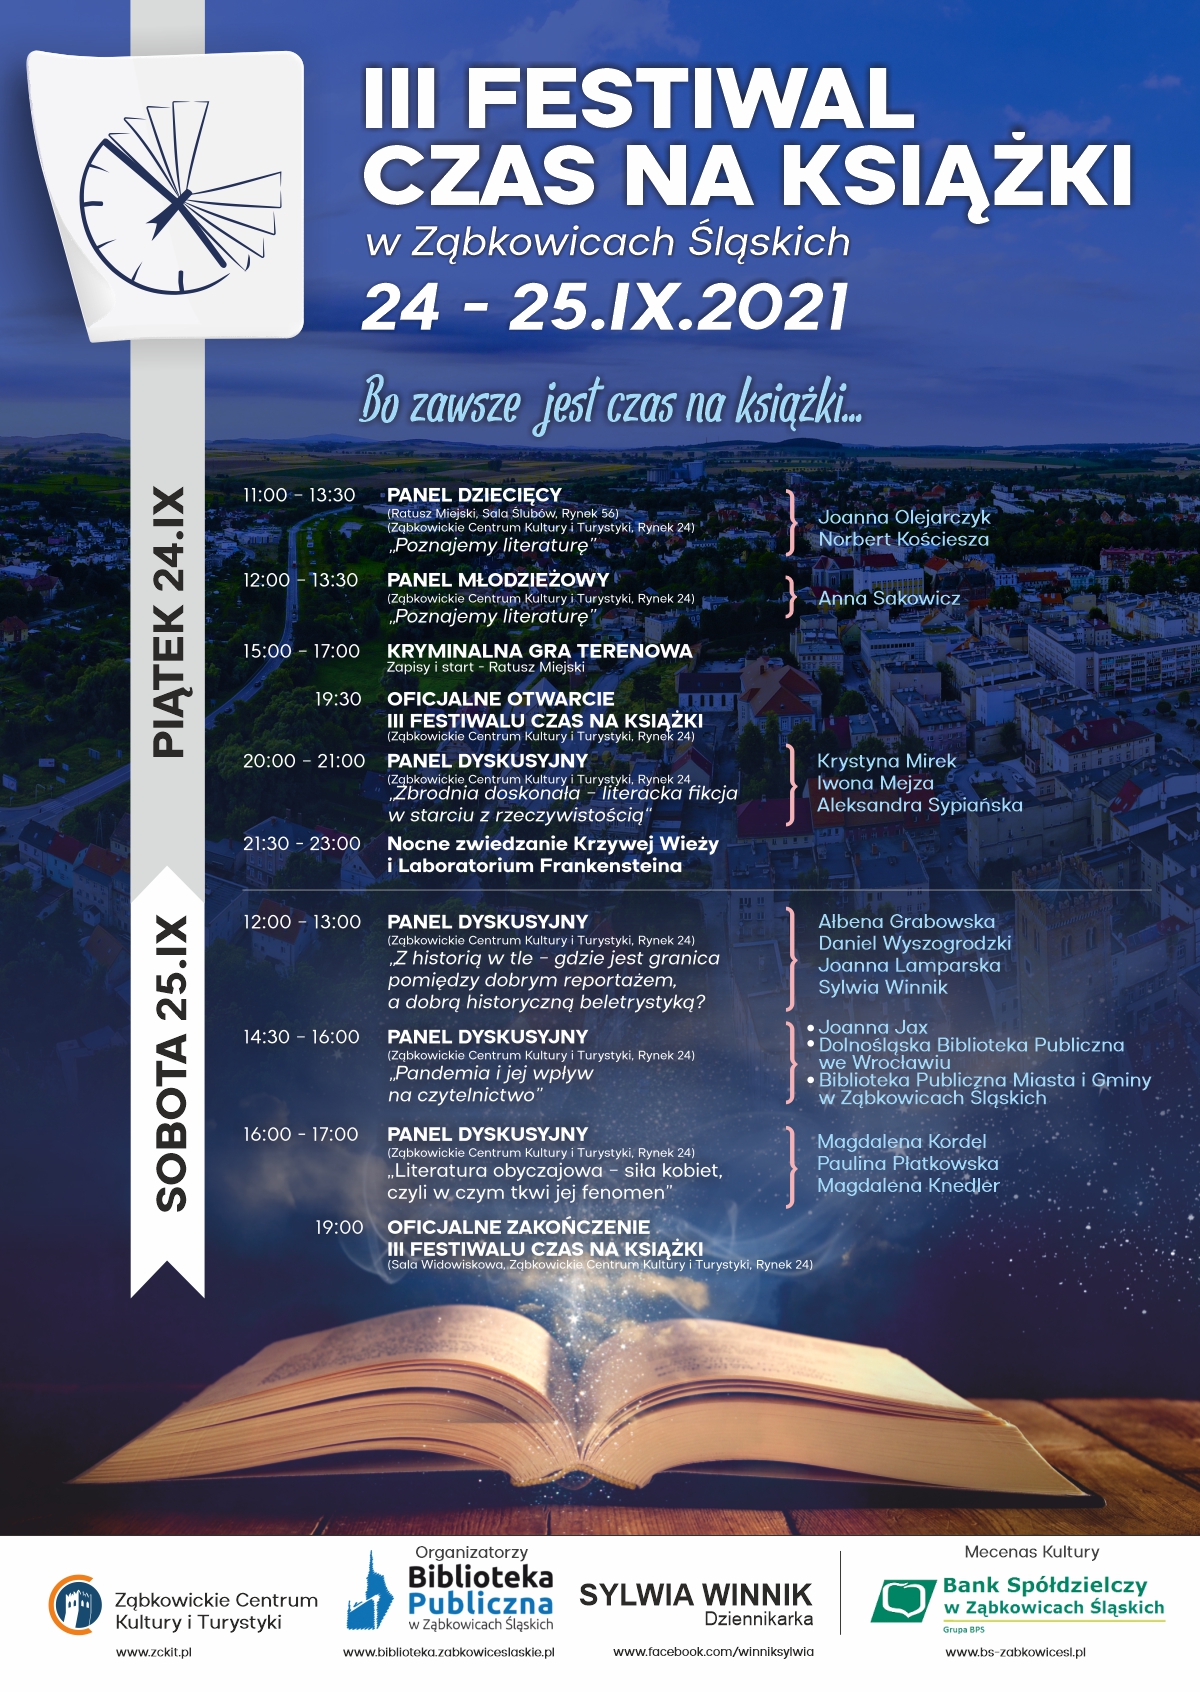 III FESTIWAL CZAS NA KSIĄŻKI w Ząbkowicach Śląskich 24-25 września 2021 PLAN WYDARZEŃ